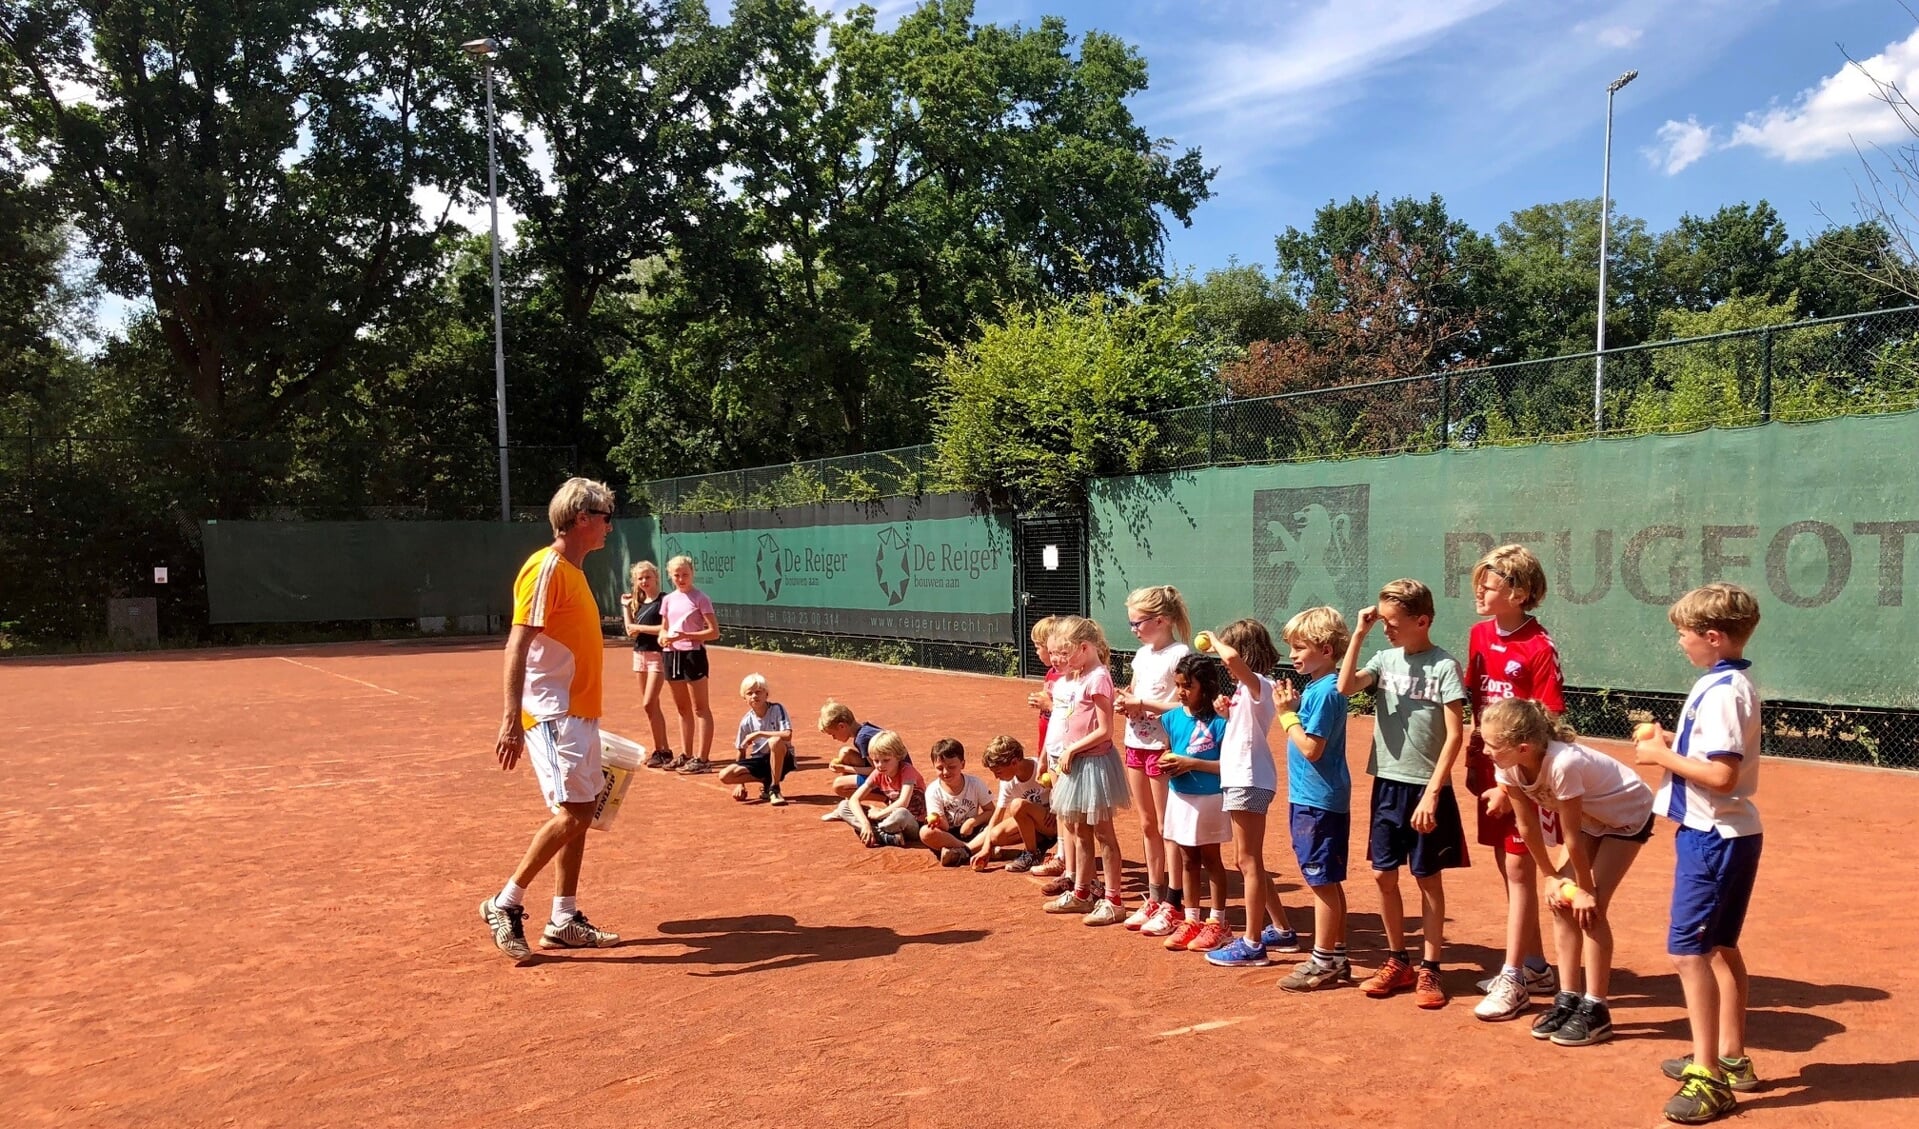   Rik van Savooyen brengt de jeugd tenniskneepjes bij tijdens het tenniskamp.